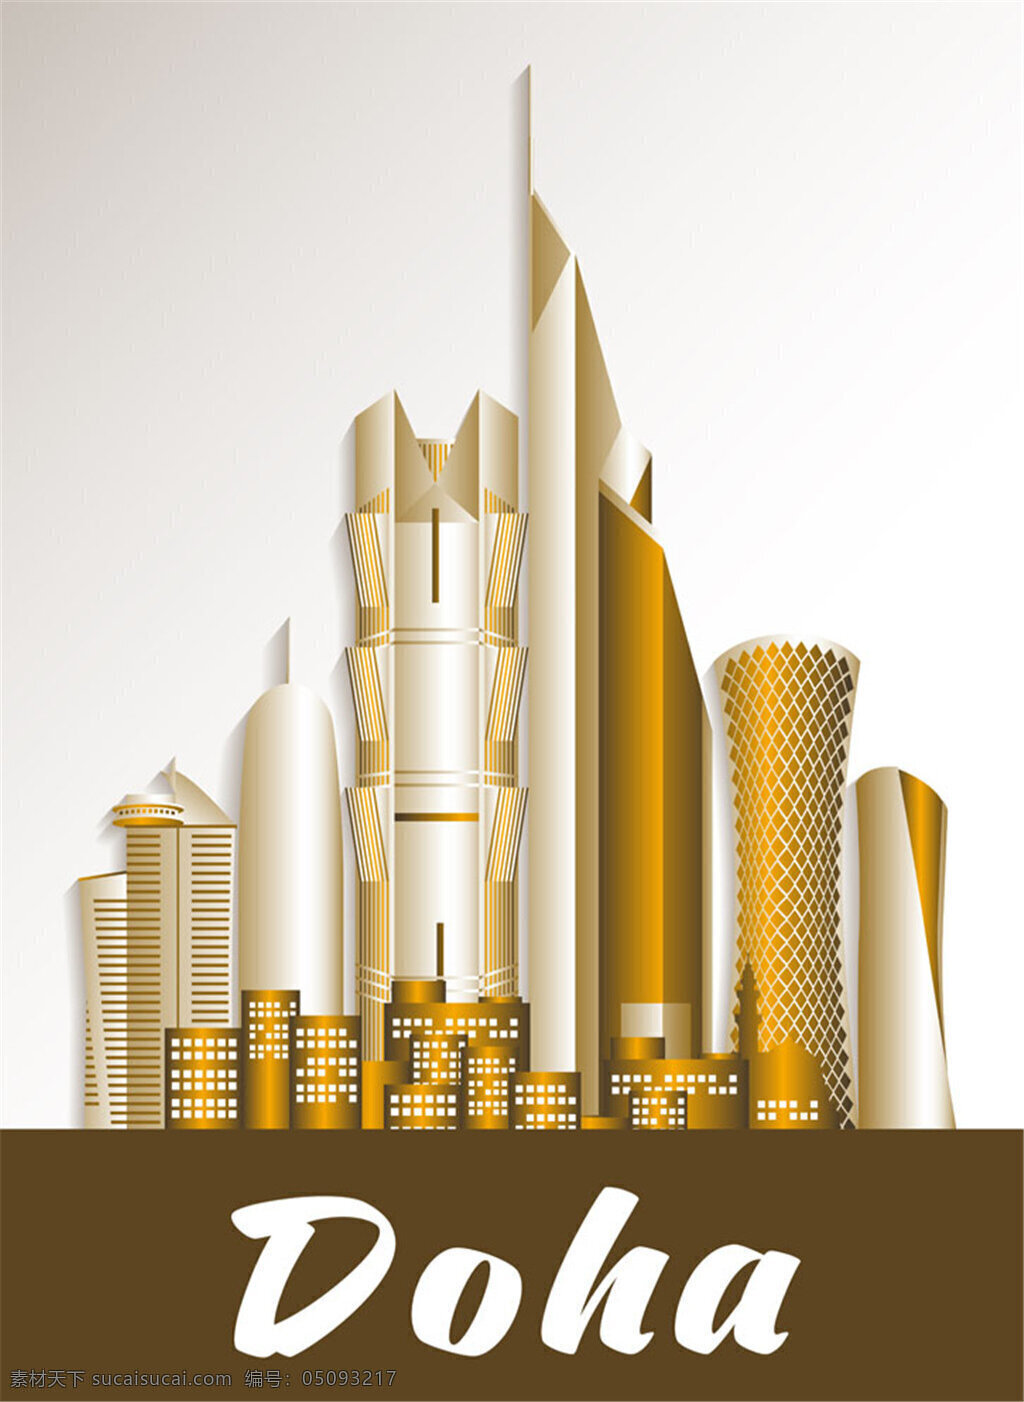 沙特阿拉伯王国 黄色 旅游 建筑 沙特阿拉伯 矢量 旅游建筑 高楼大厦 城堡 著名建筑